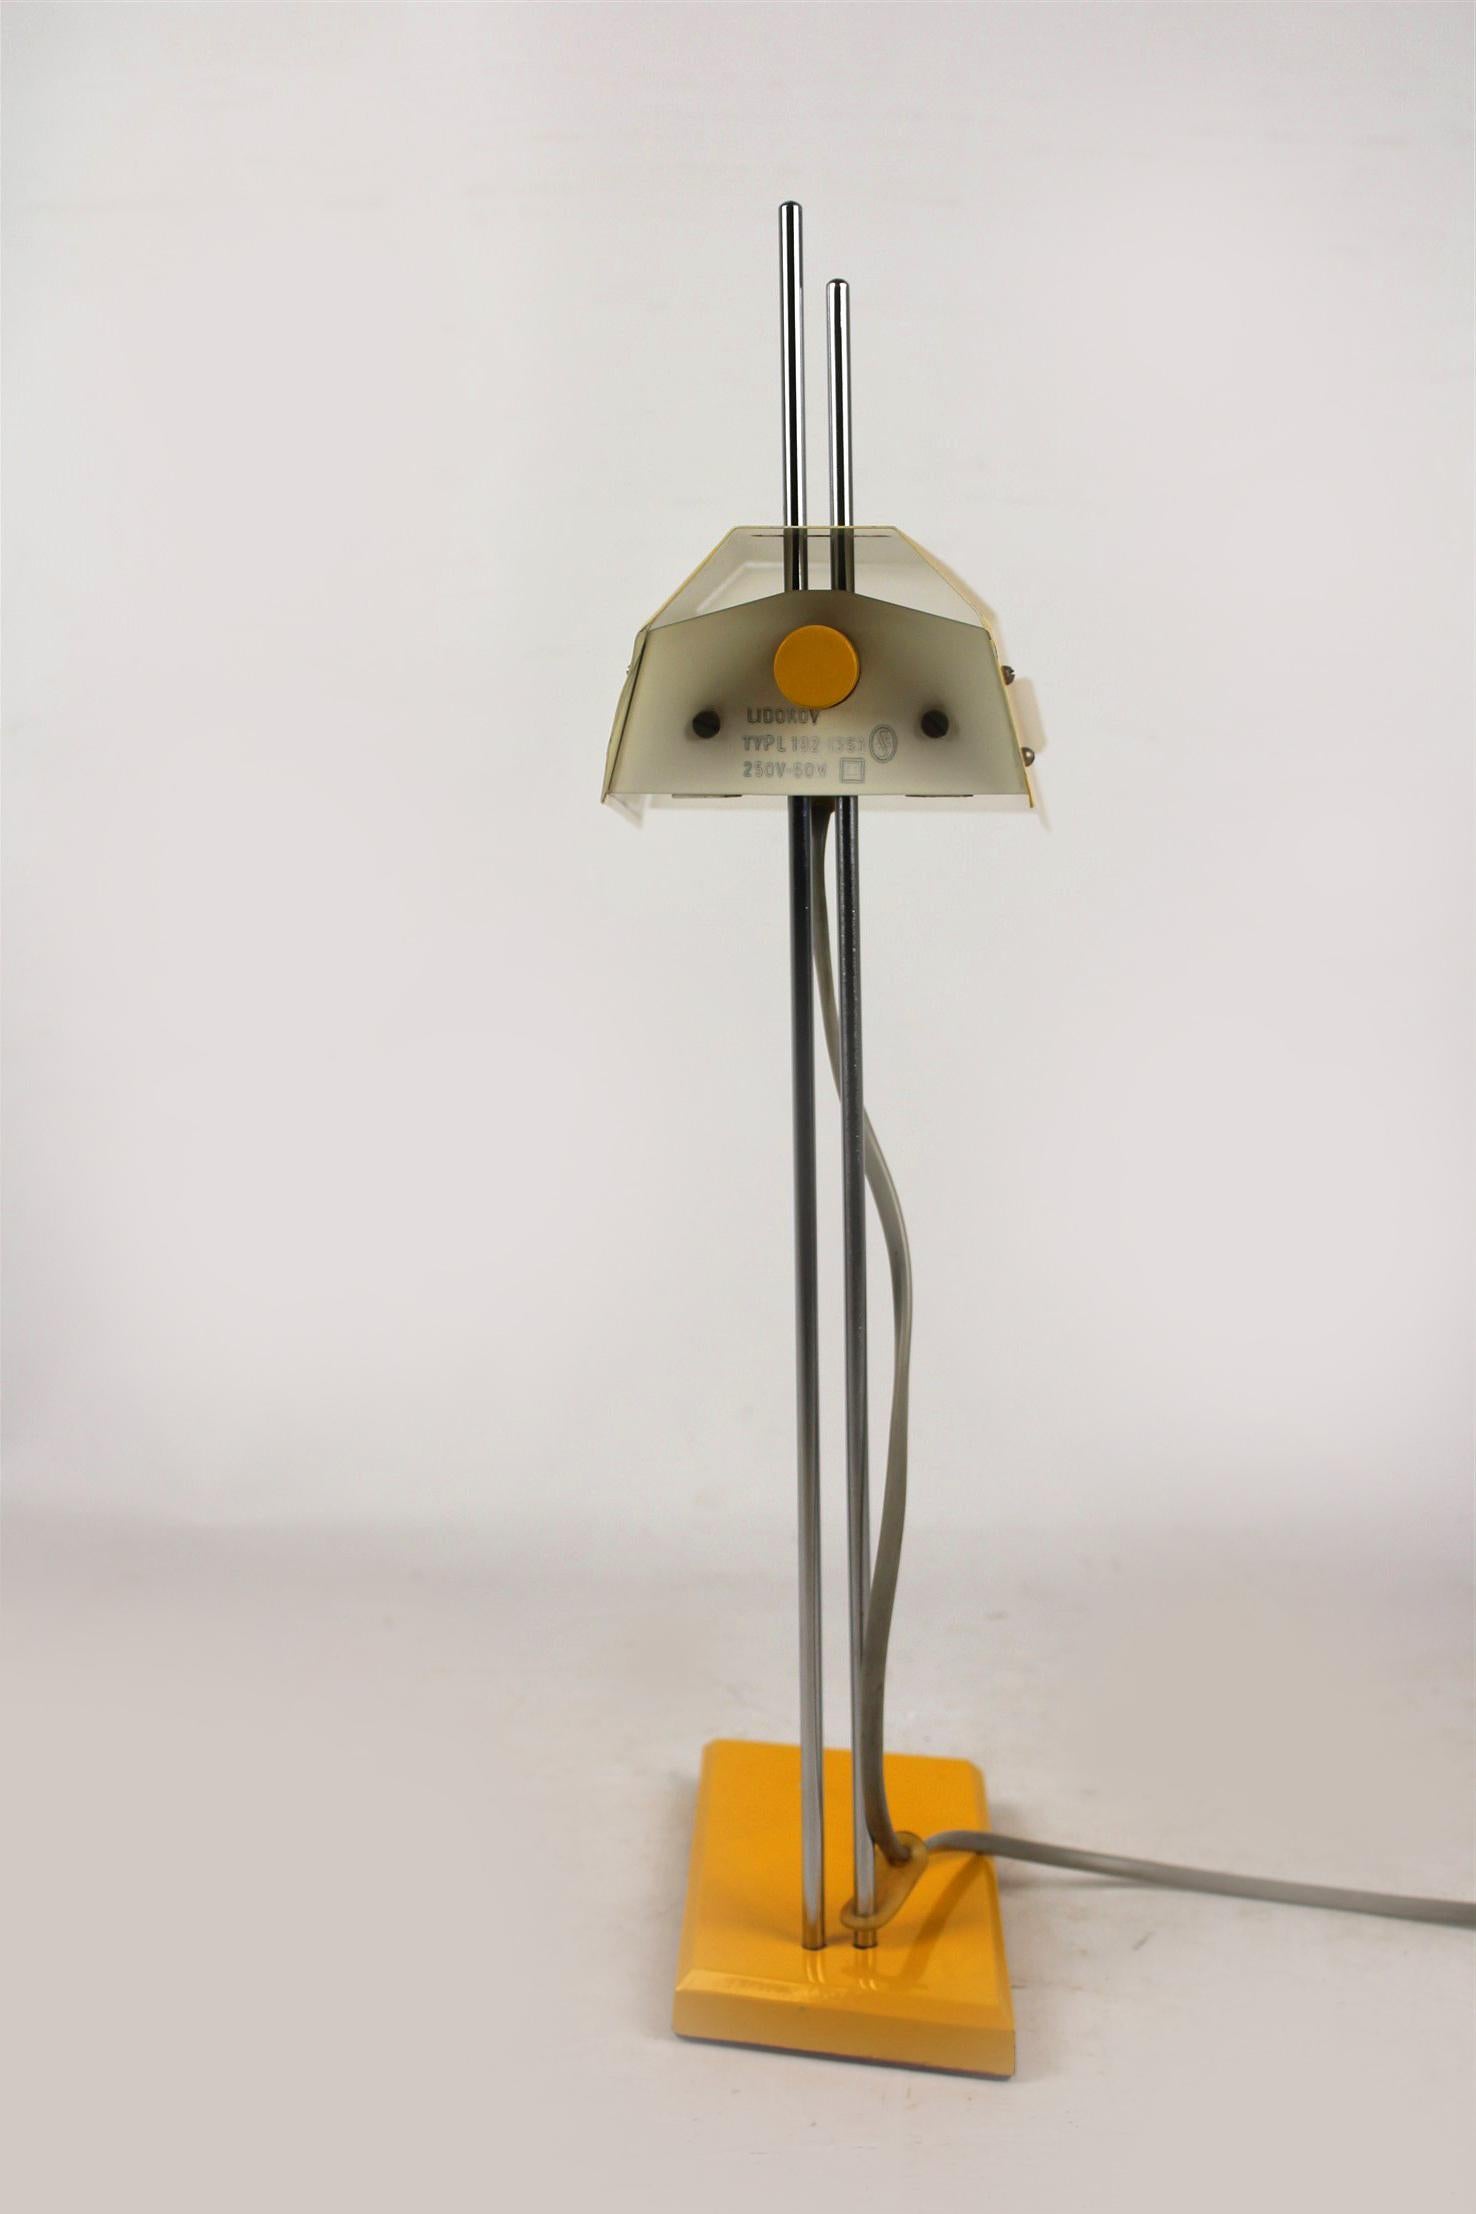 Midcentury Table Lamp by Josef Hurka for Lidokov, 1970s (20. Jahrhundert)